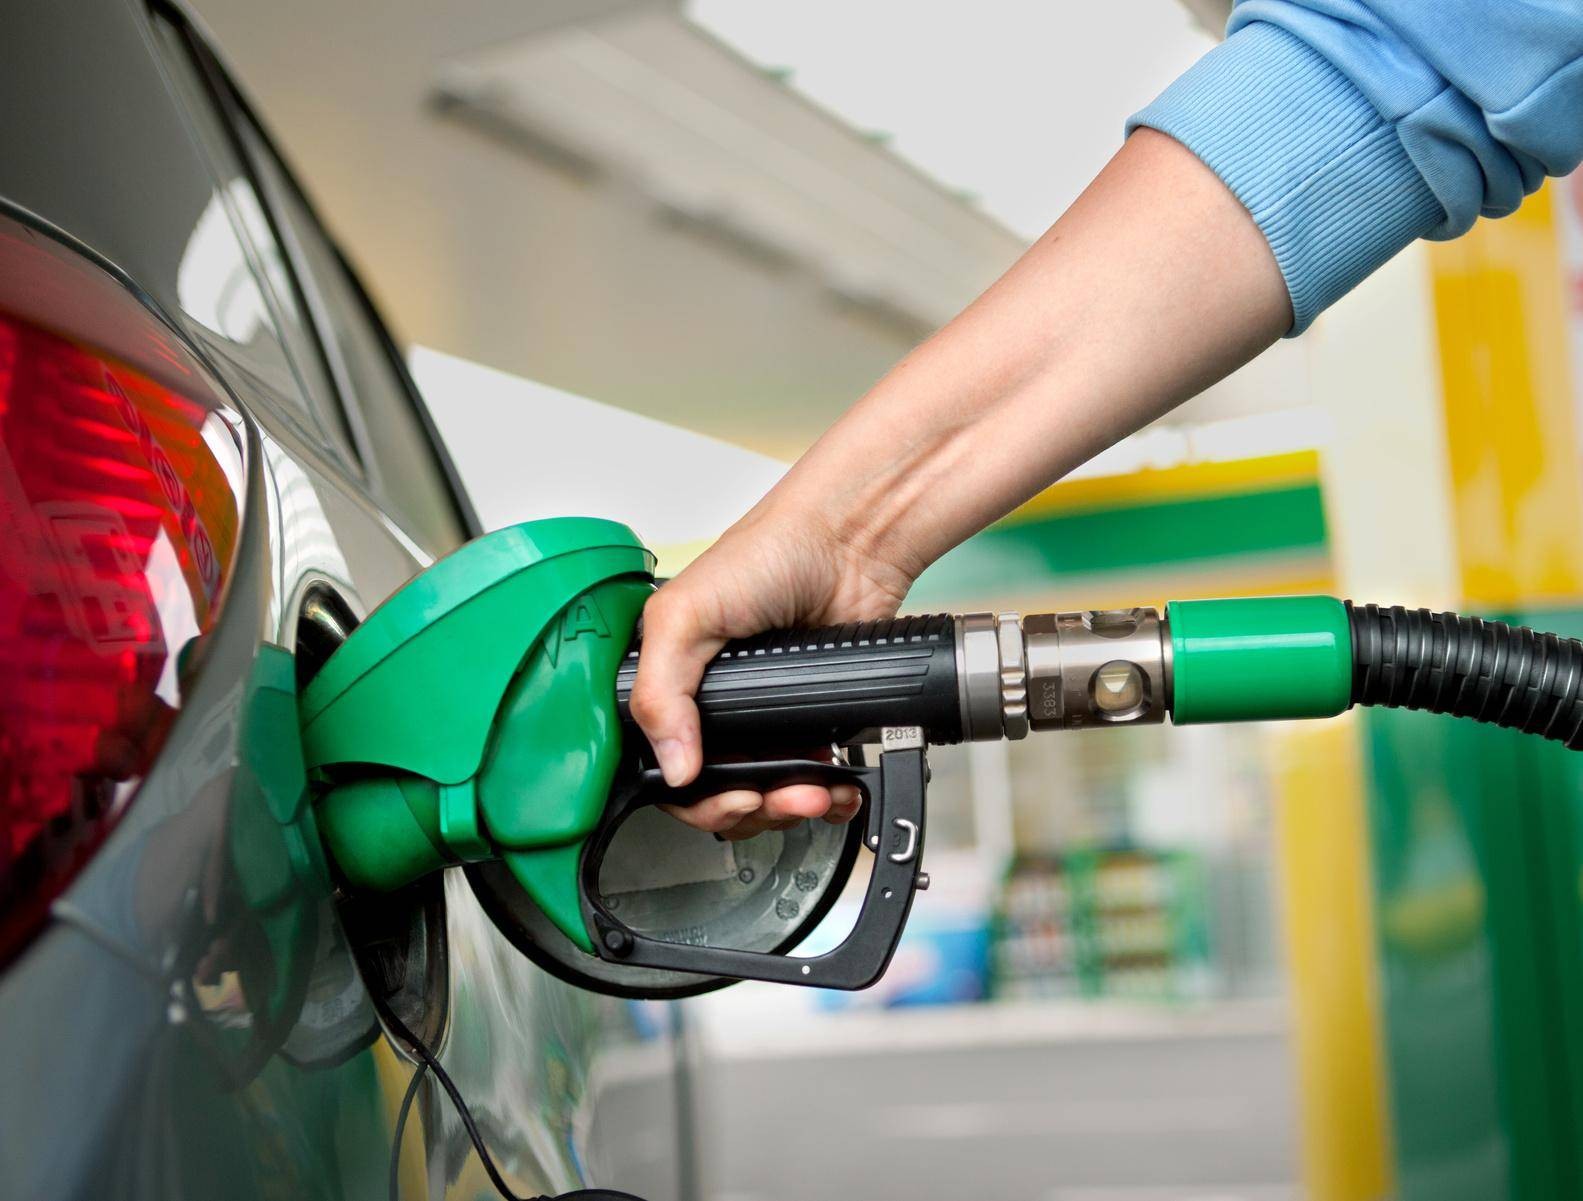 Понимание политики топлива при аренде автомобиля: полный бак против предоплаченных опций